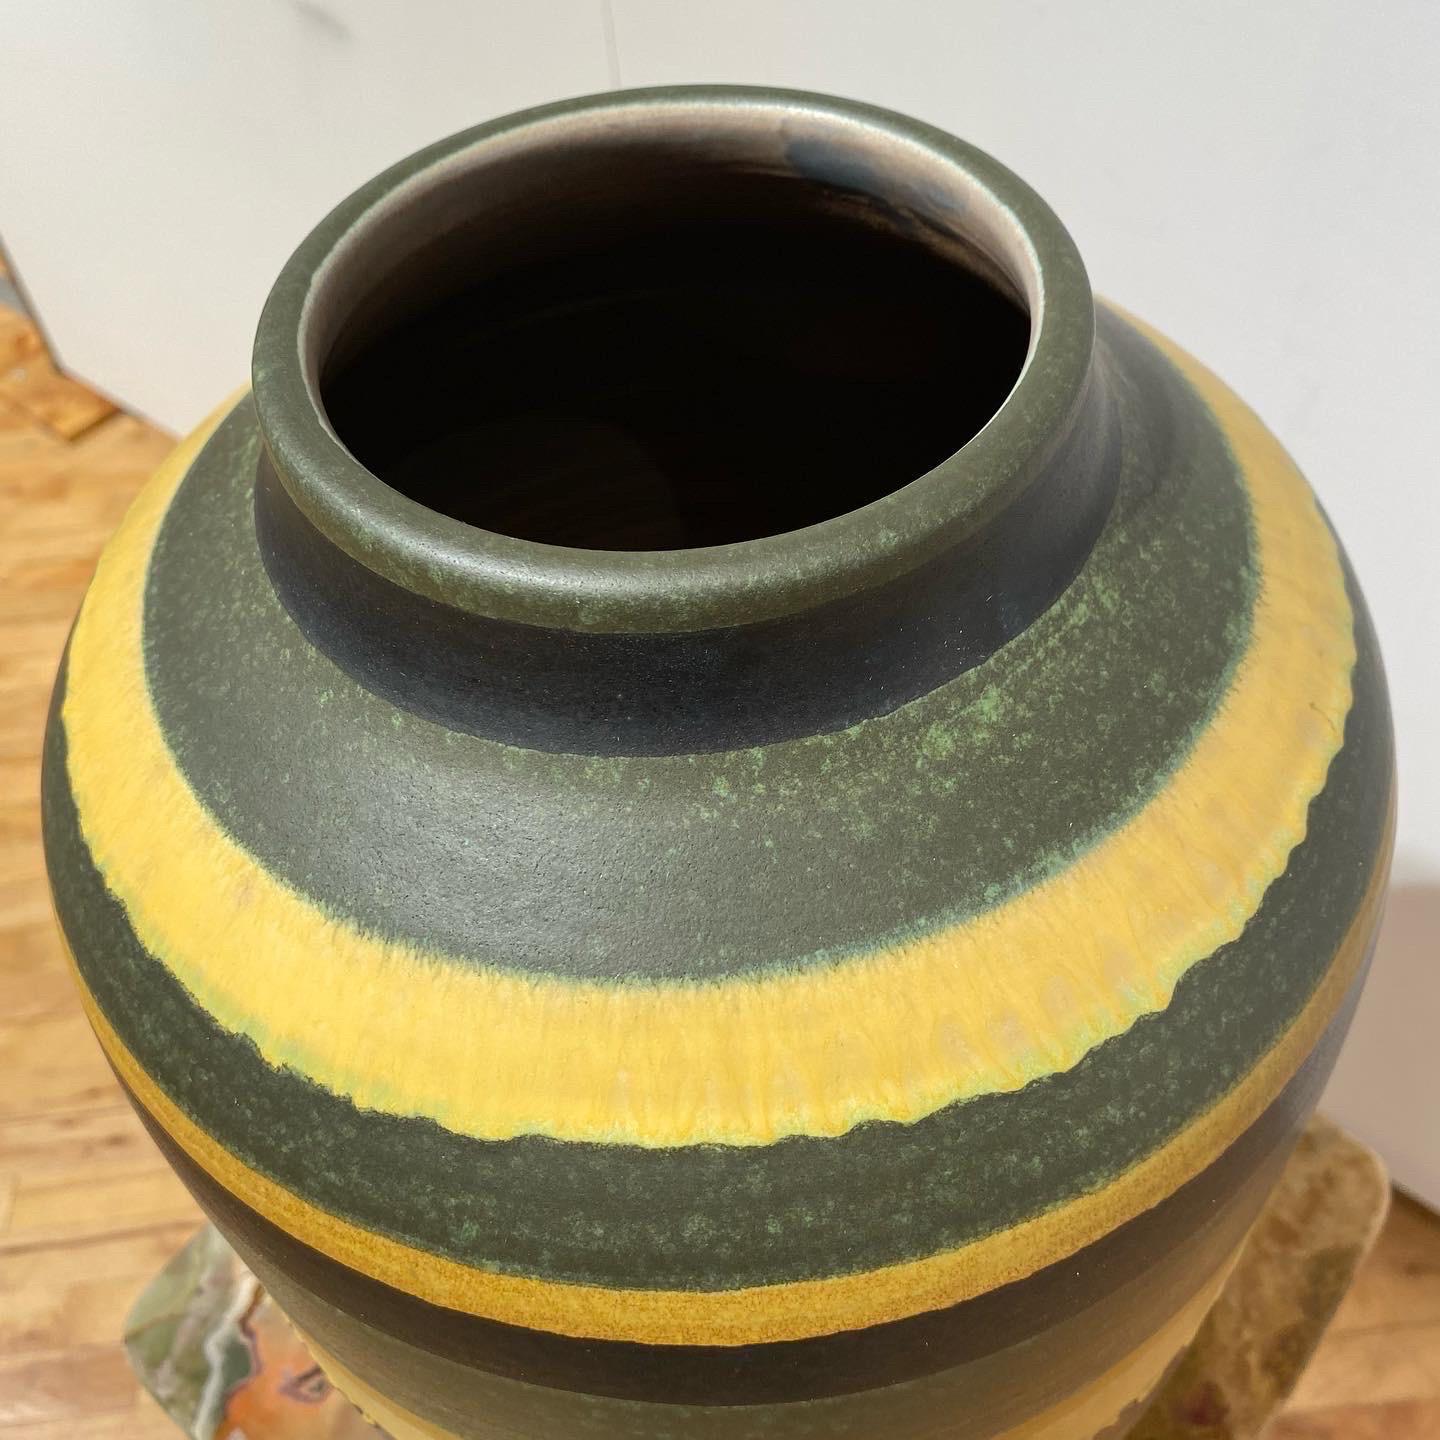 Diese große Rad gedreht Vase spricht für sich mehrfarbige Glasur und übergroß. Die Öffnung beträgt 4,5